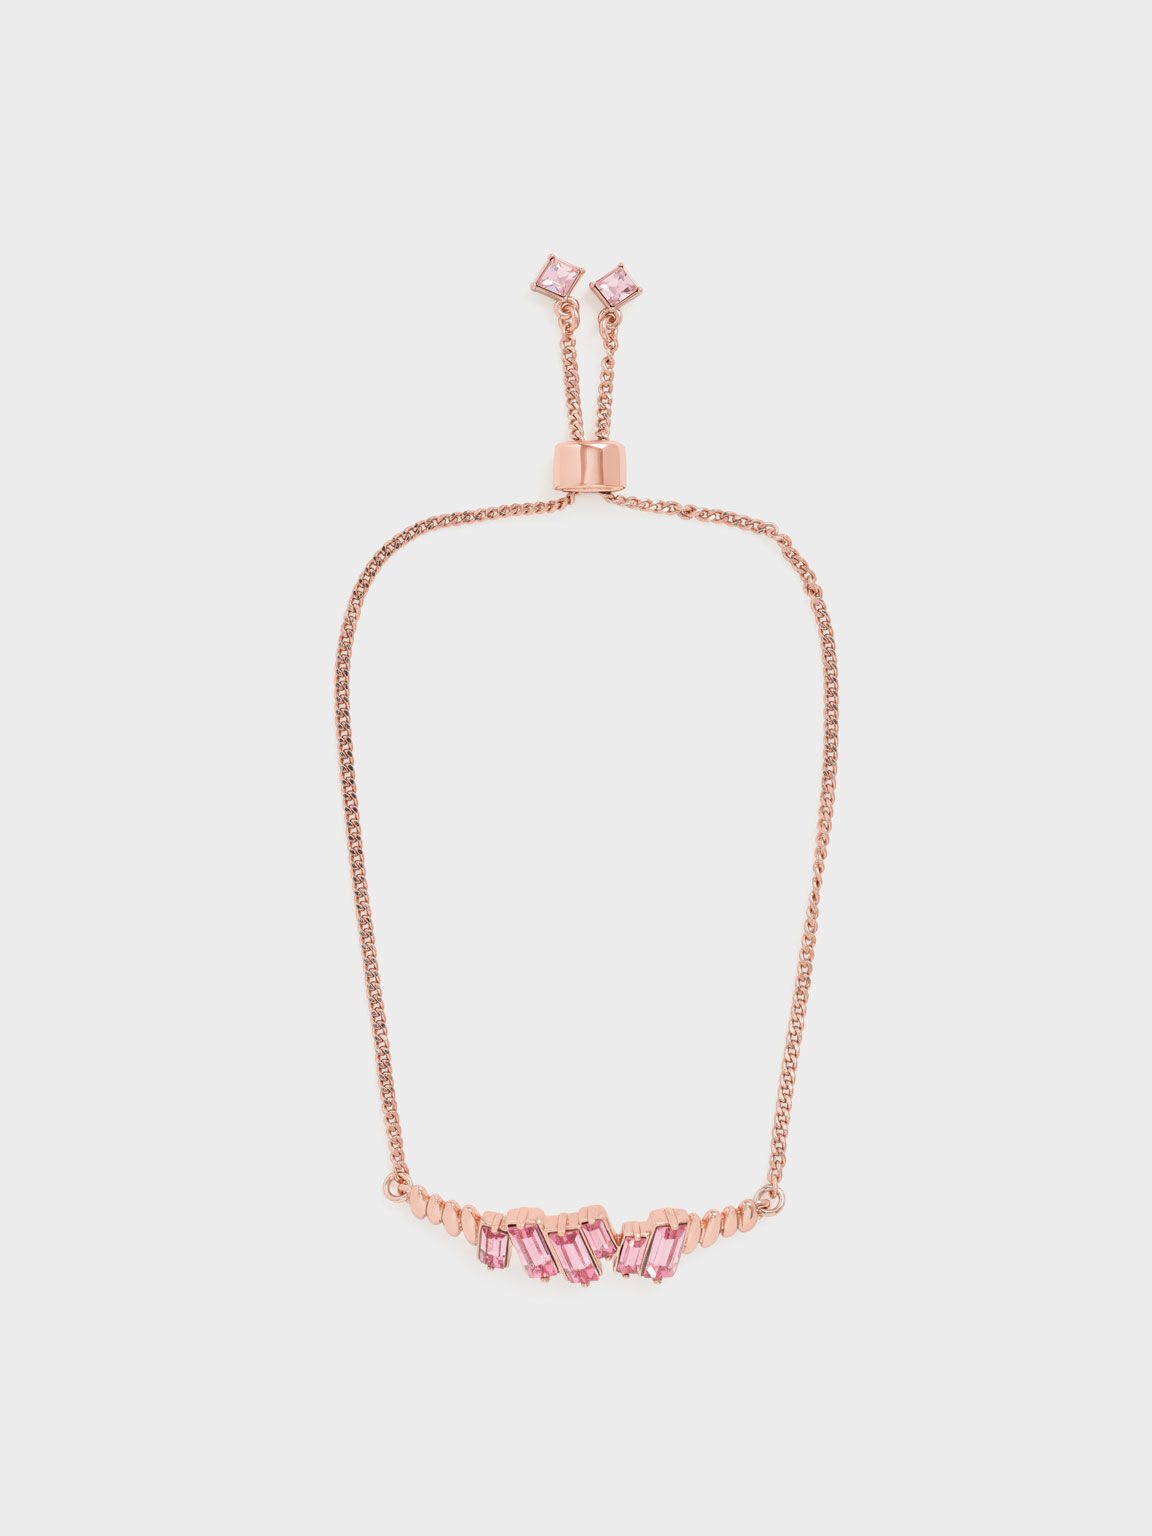 Swarovski® Crystal Embellished Chain Bracelet, Rose Gold, hi-res